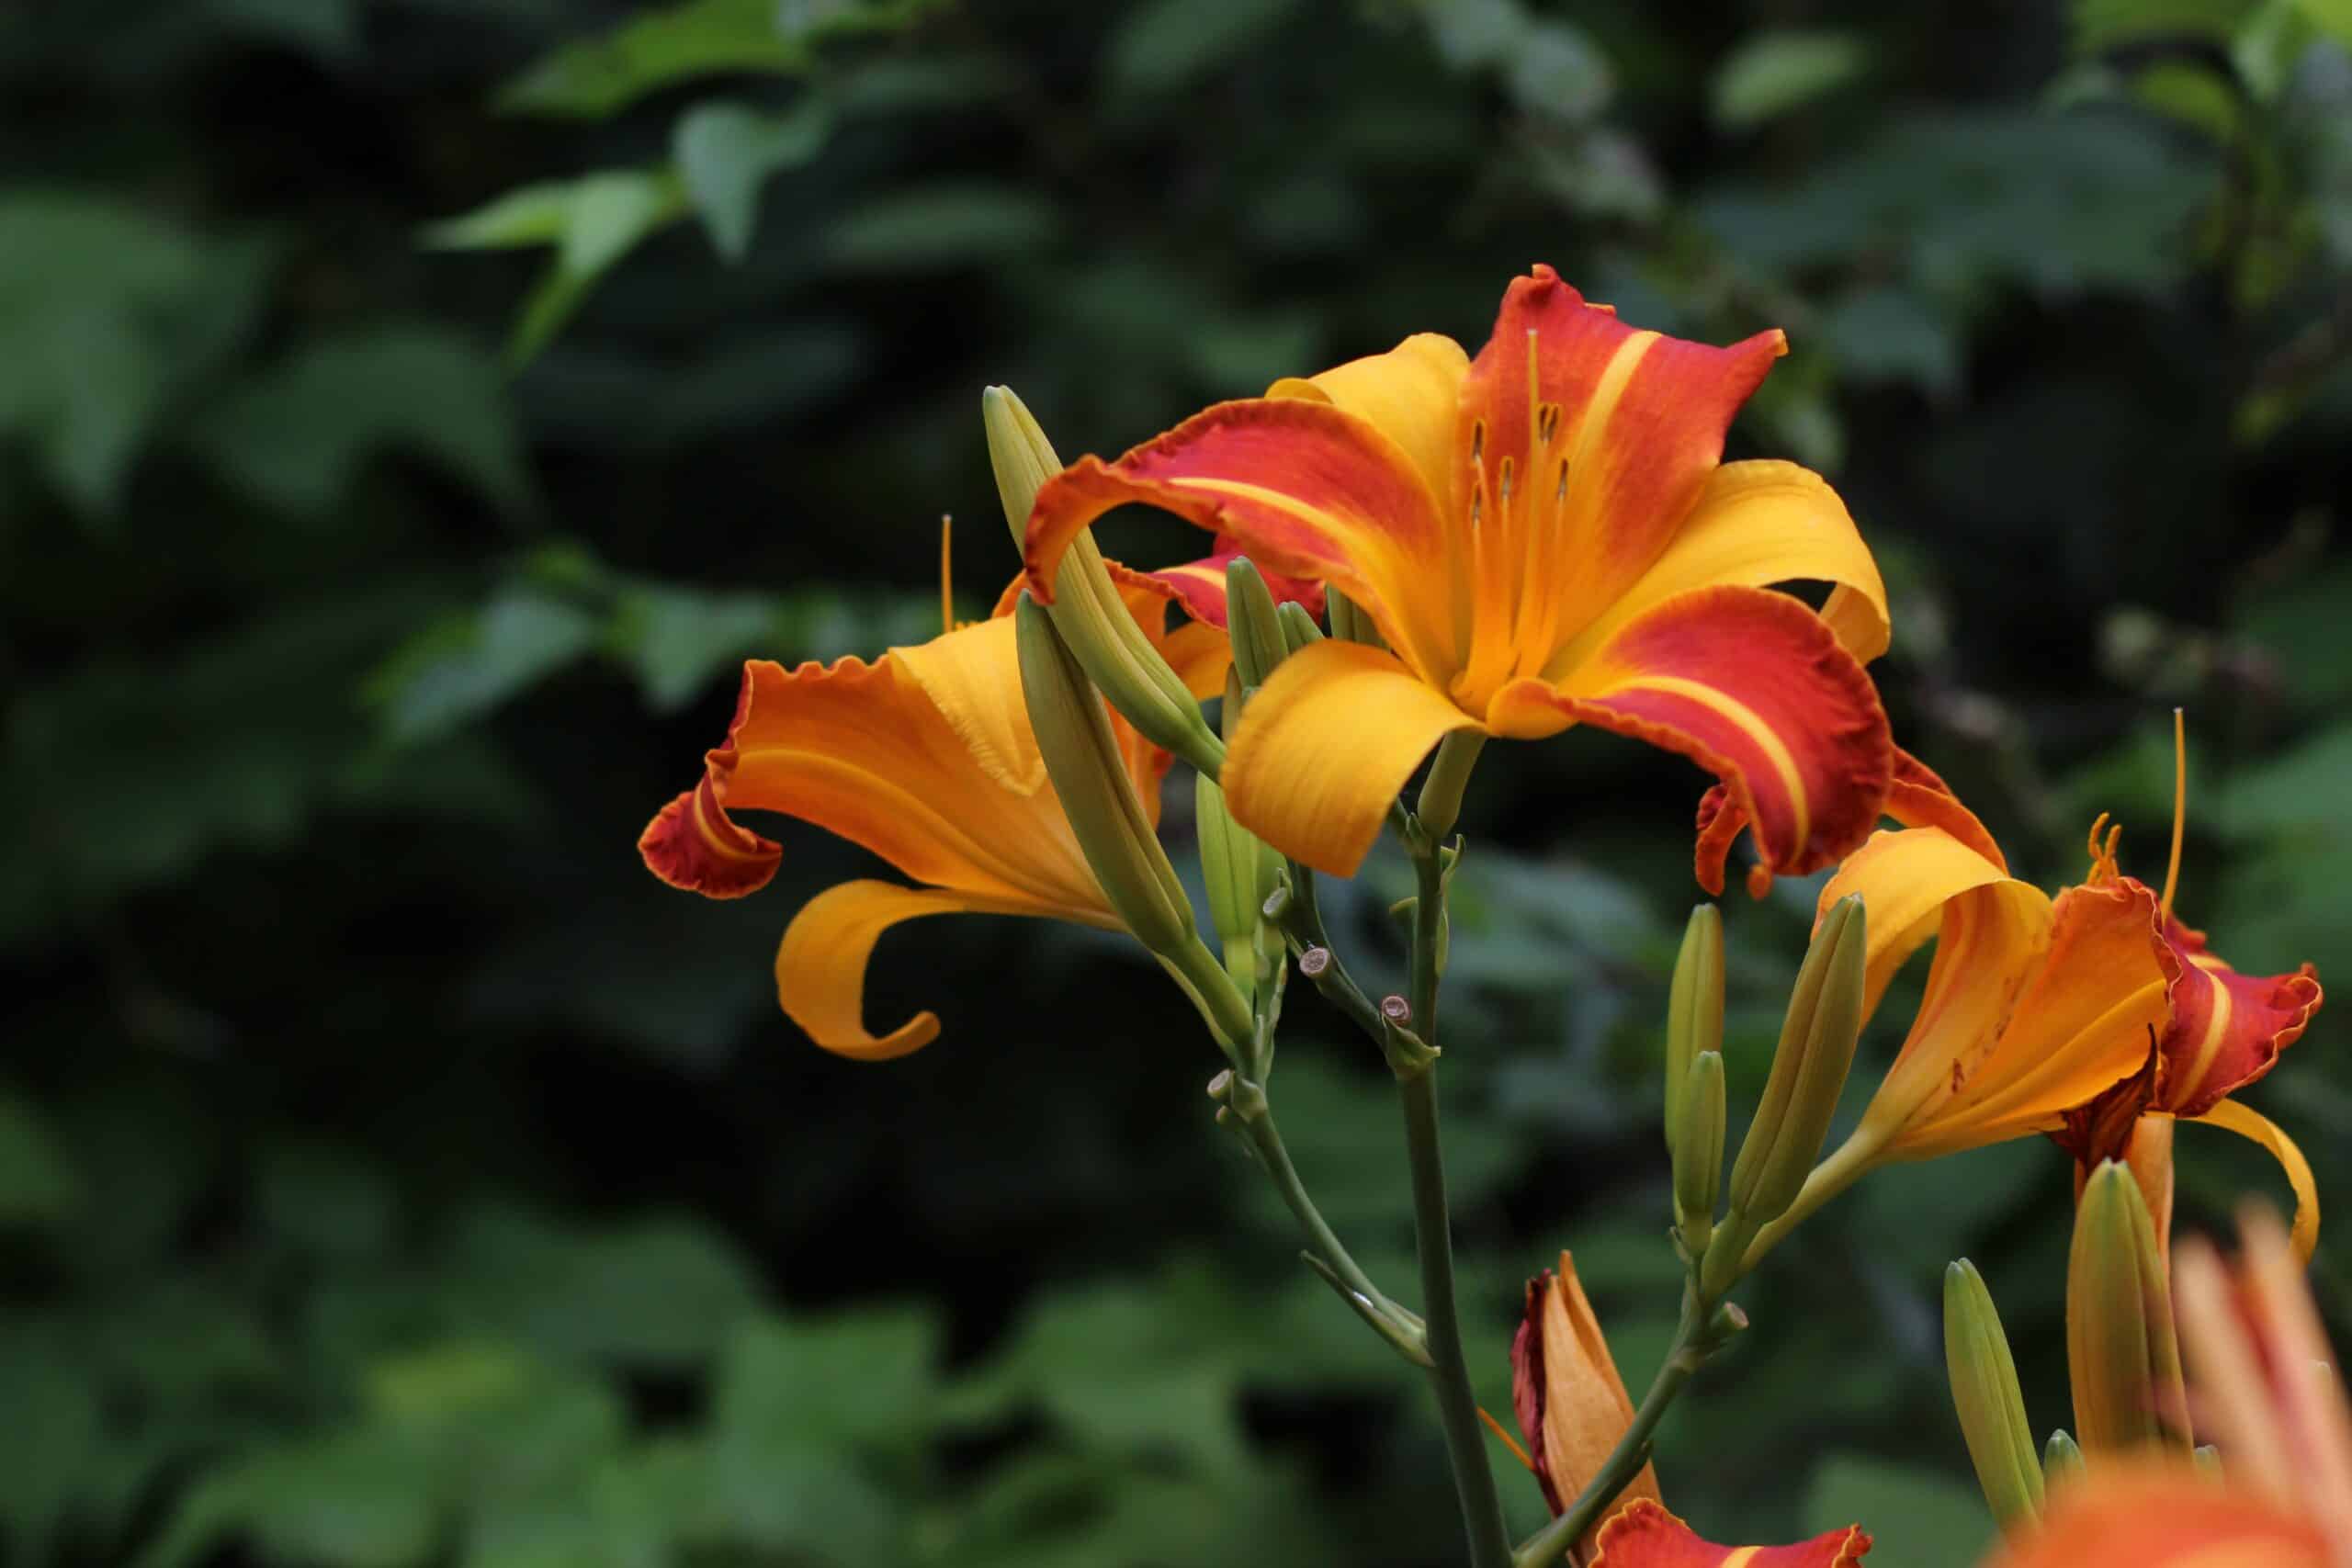 Primer plano de las flores de Daylily que tienen seis pétalos dispuestos en un patrón circular, con una gama de colores vibrantes que van del amarillo al naranja y al rojo. Los tallos son largos y delgados, se elevan desde el centro de la planta y sostienen múltiples botones florales.